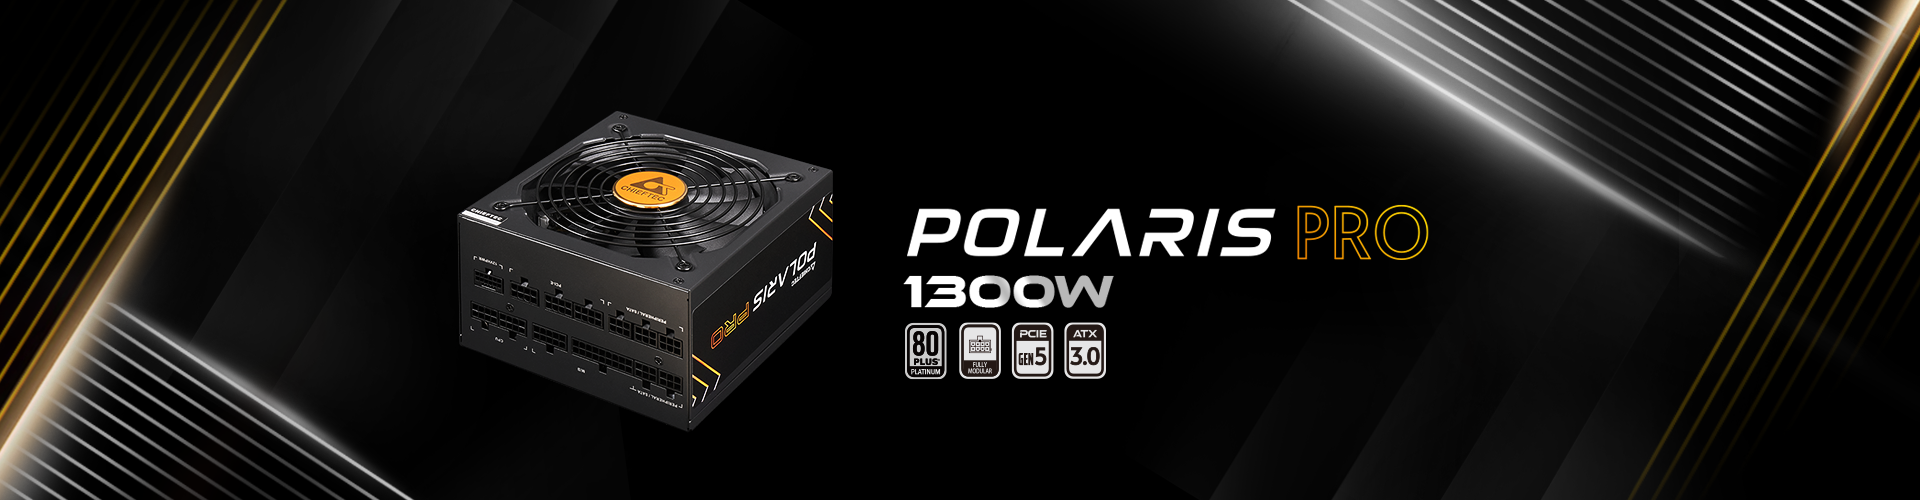 Polaris Pro